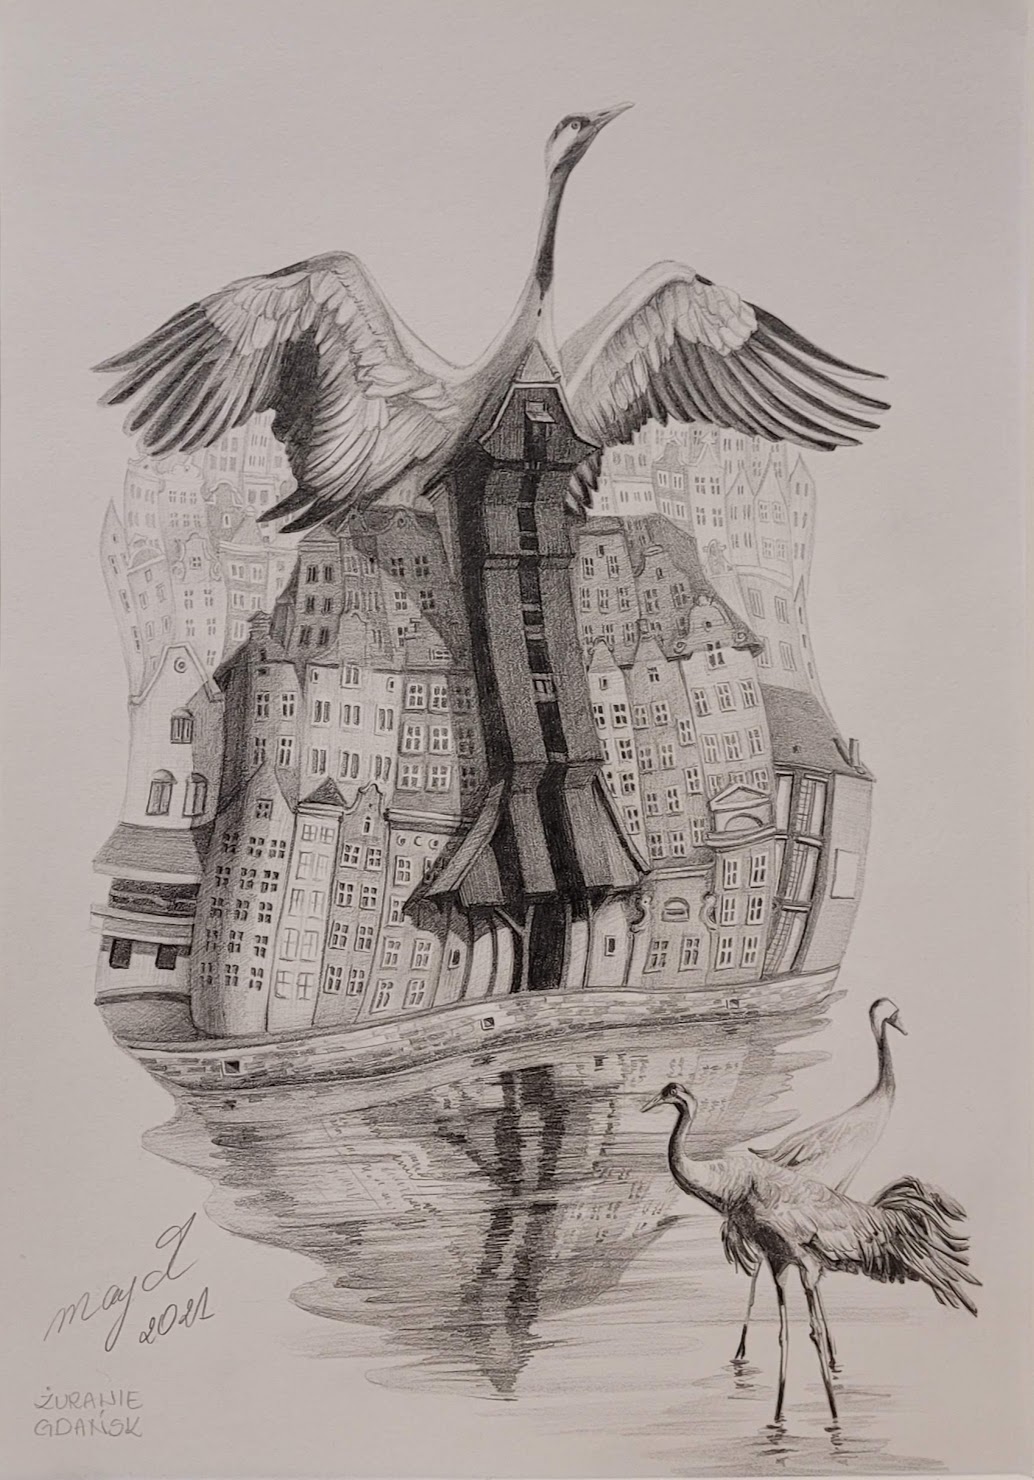 Zdjęcie rysunku ołówkami na papierze autorstwa Mai Wolf przedstawia szkic Gdańska nad Motławą z ujęciem na gdański żuraw. Rysunek jest surrealistyczny i architektura żurawia przeistacza się w żurawia ptaka zrywającego się do lotu z rozpostartymi skrzydłami. Na pierwszym planie w wodzie inne żurawie ptaki.